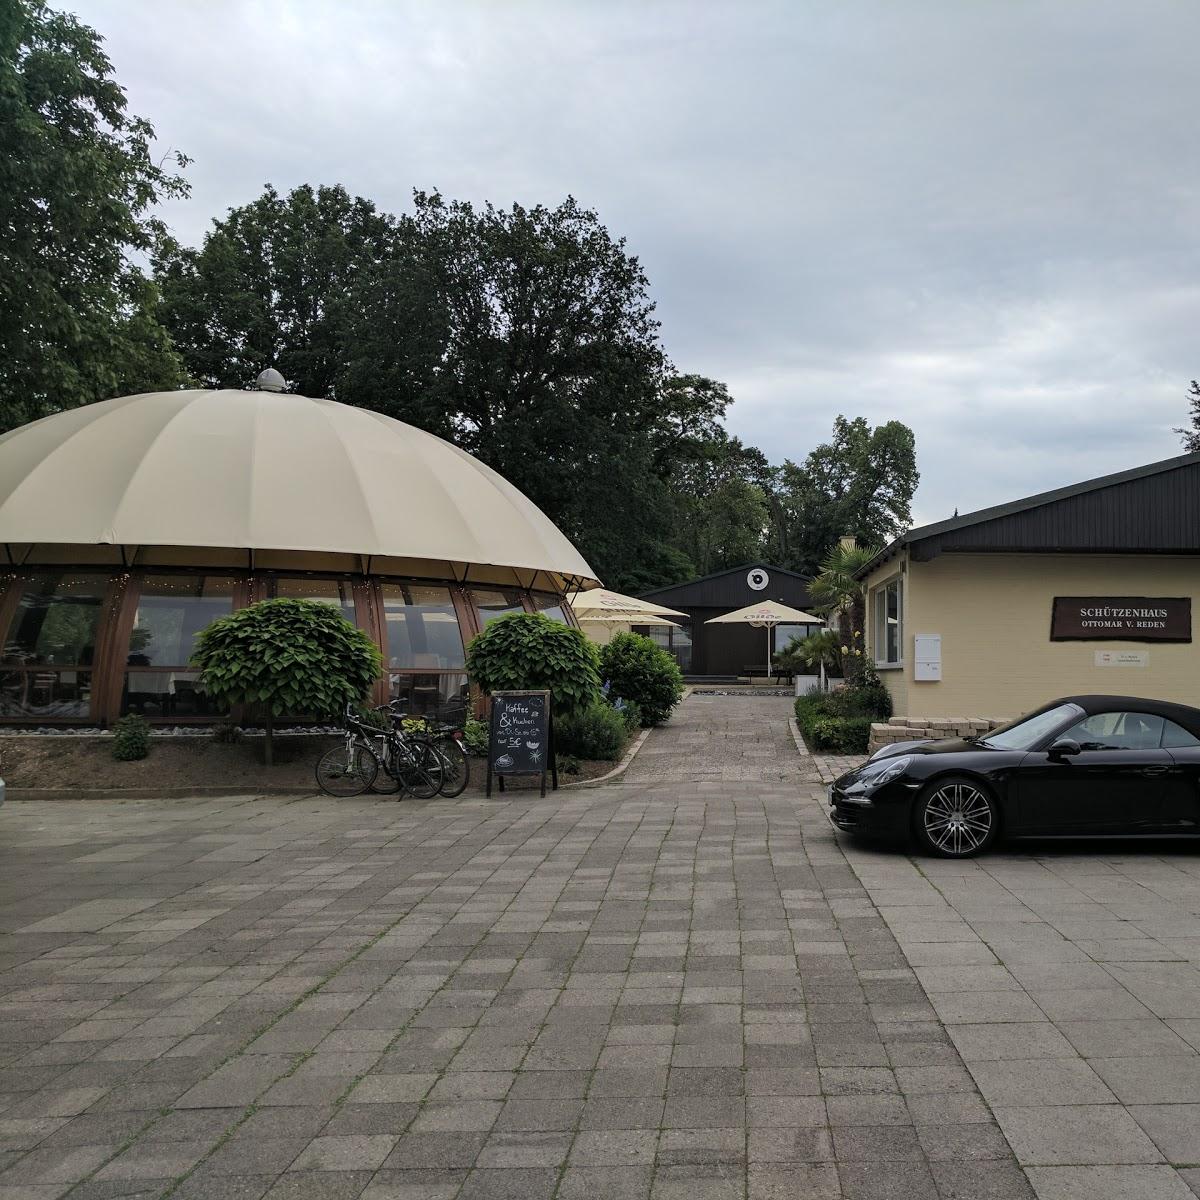 Restaurant "park:geflüster" in  Gehrden